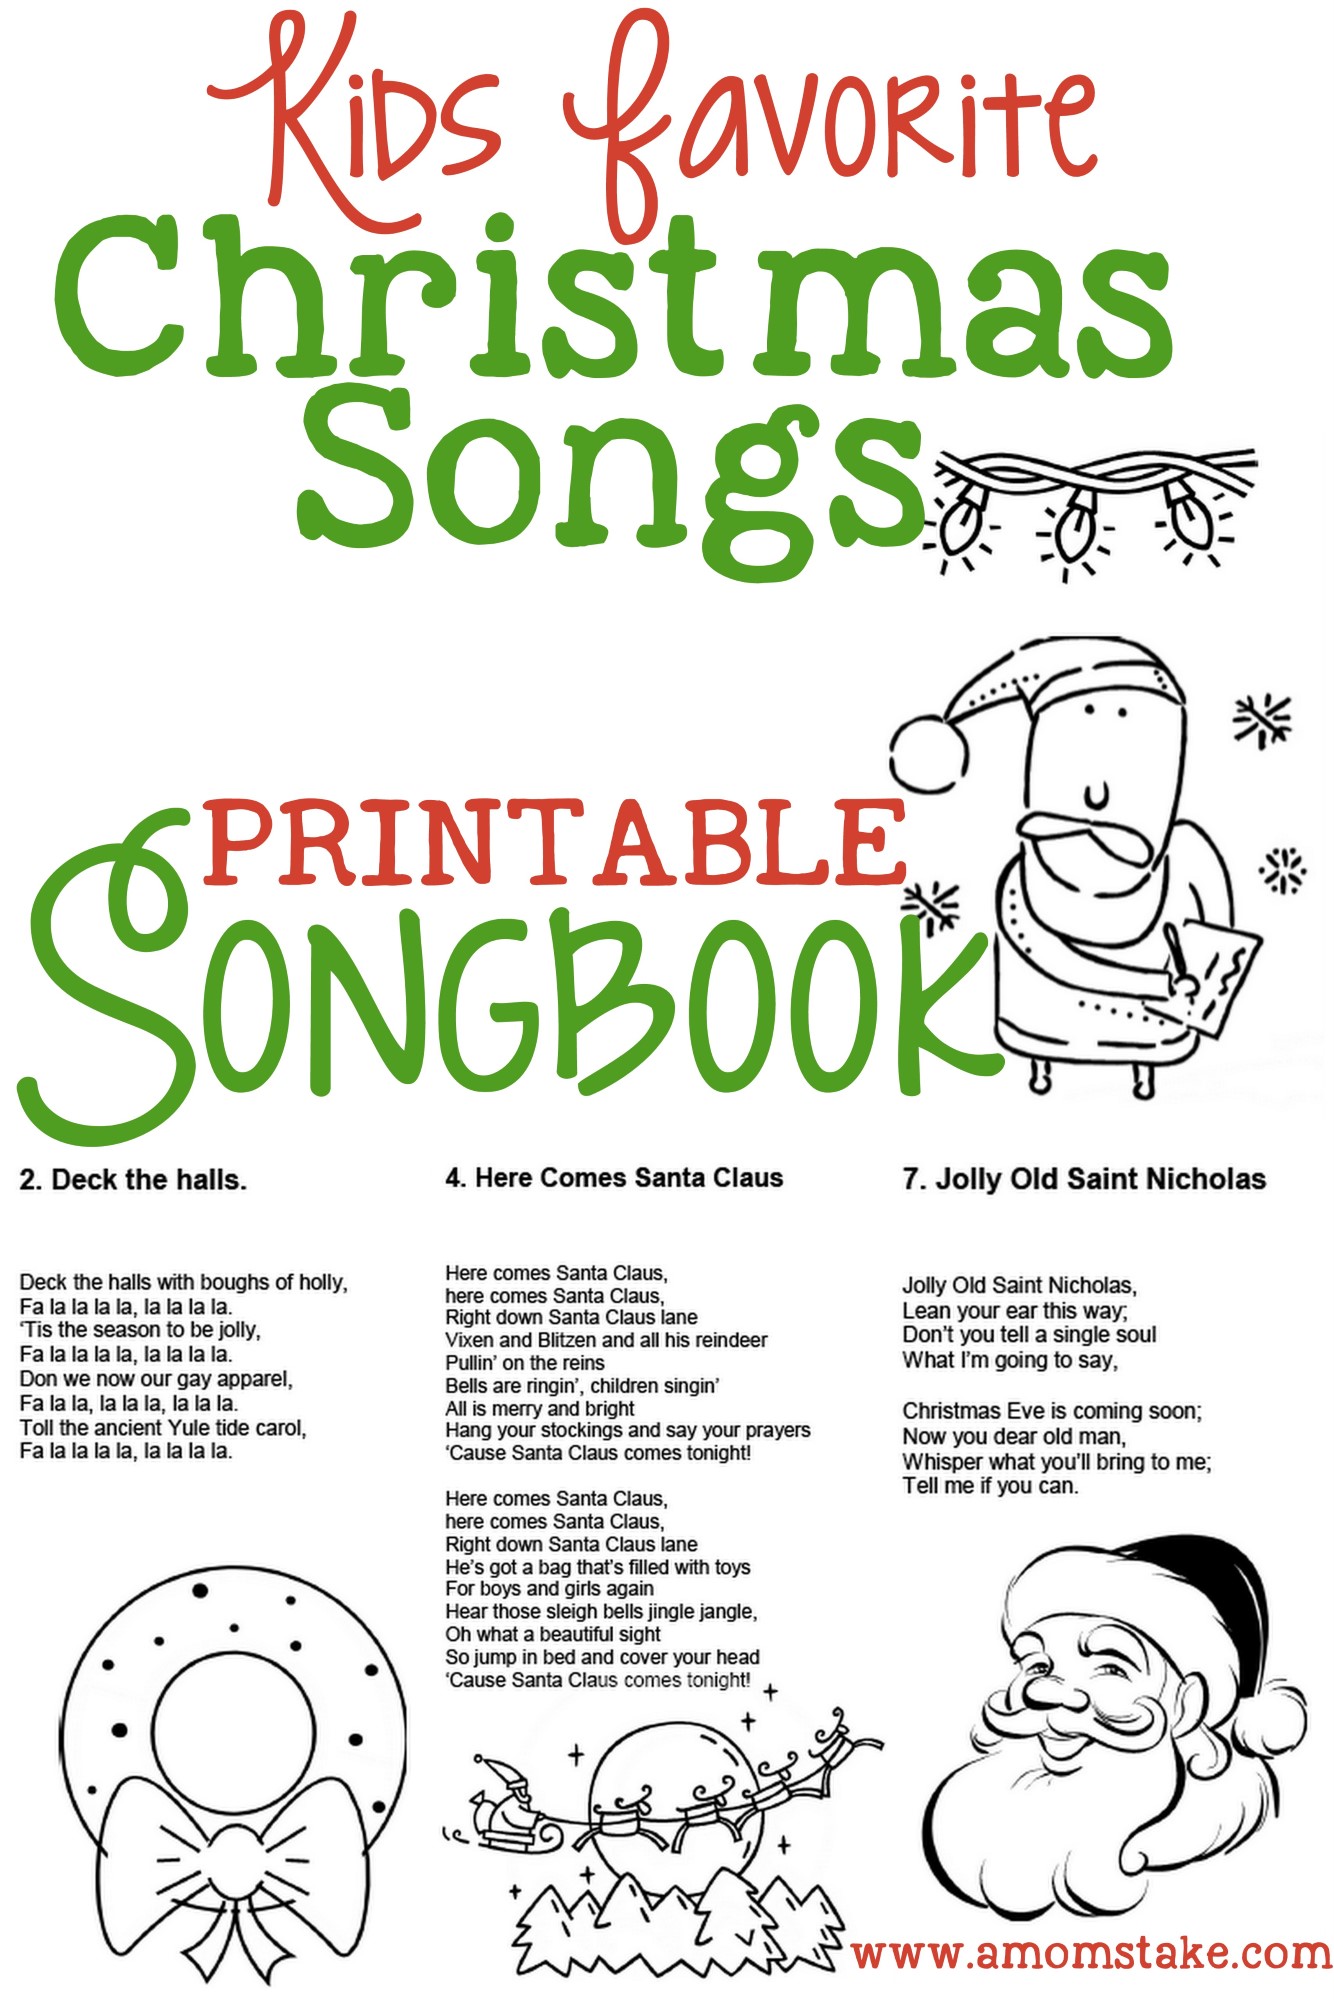 5-best-images-of-christmas-carol-songbook-printable-free-printable